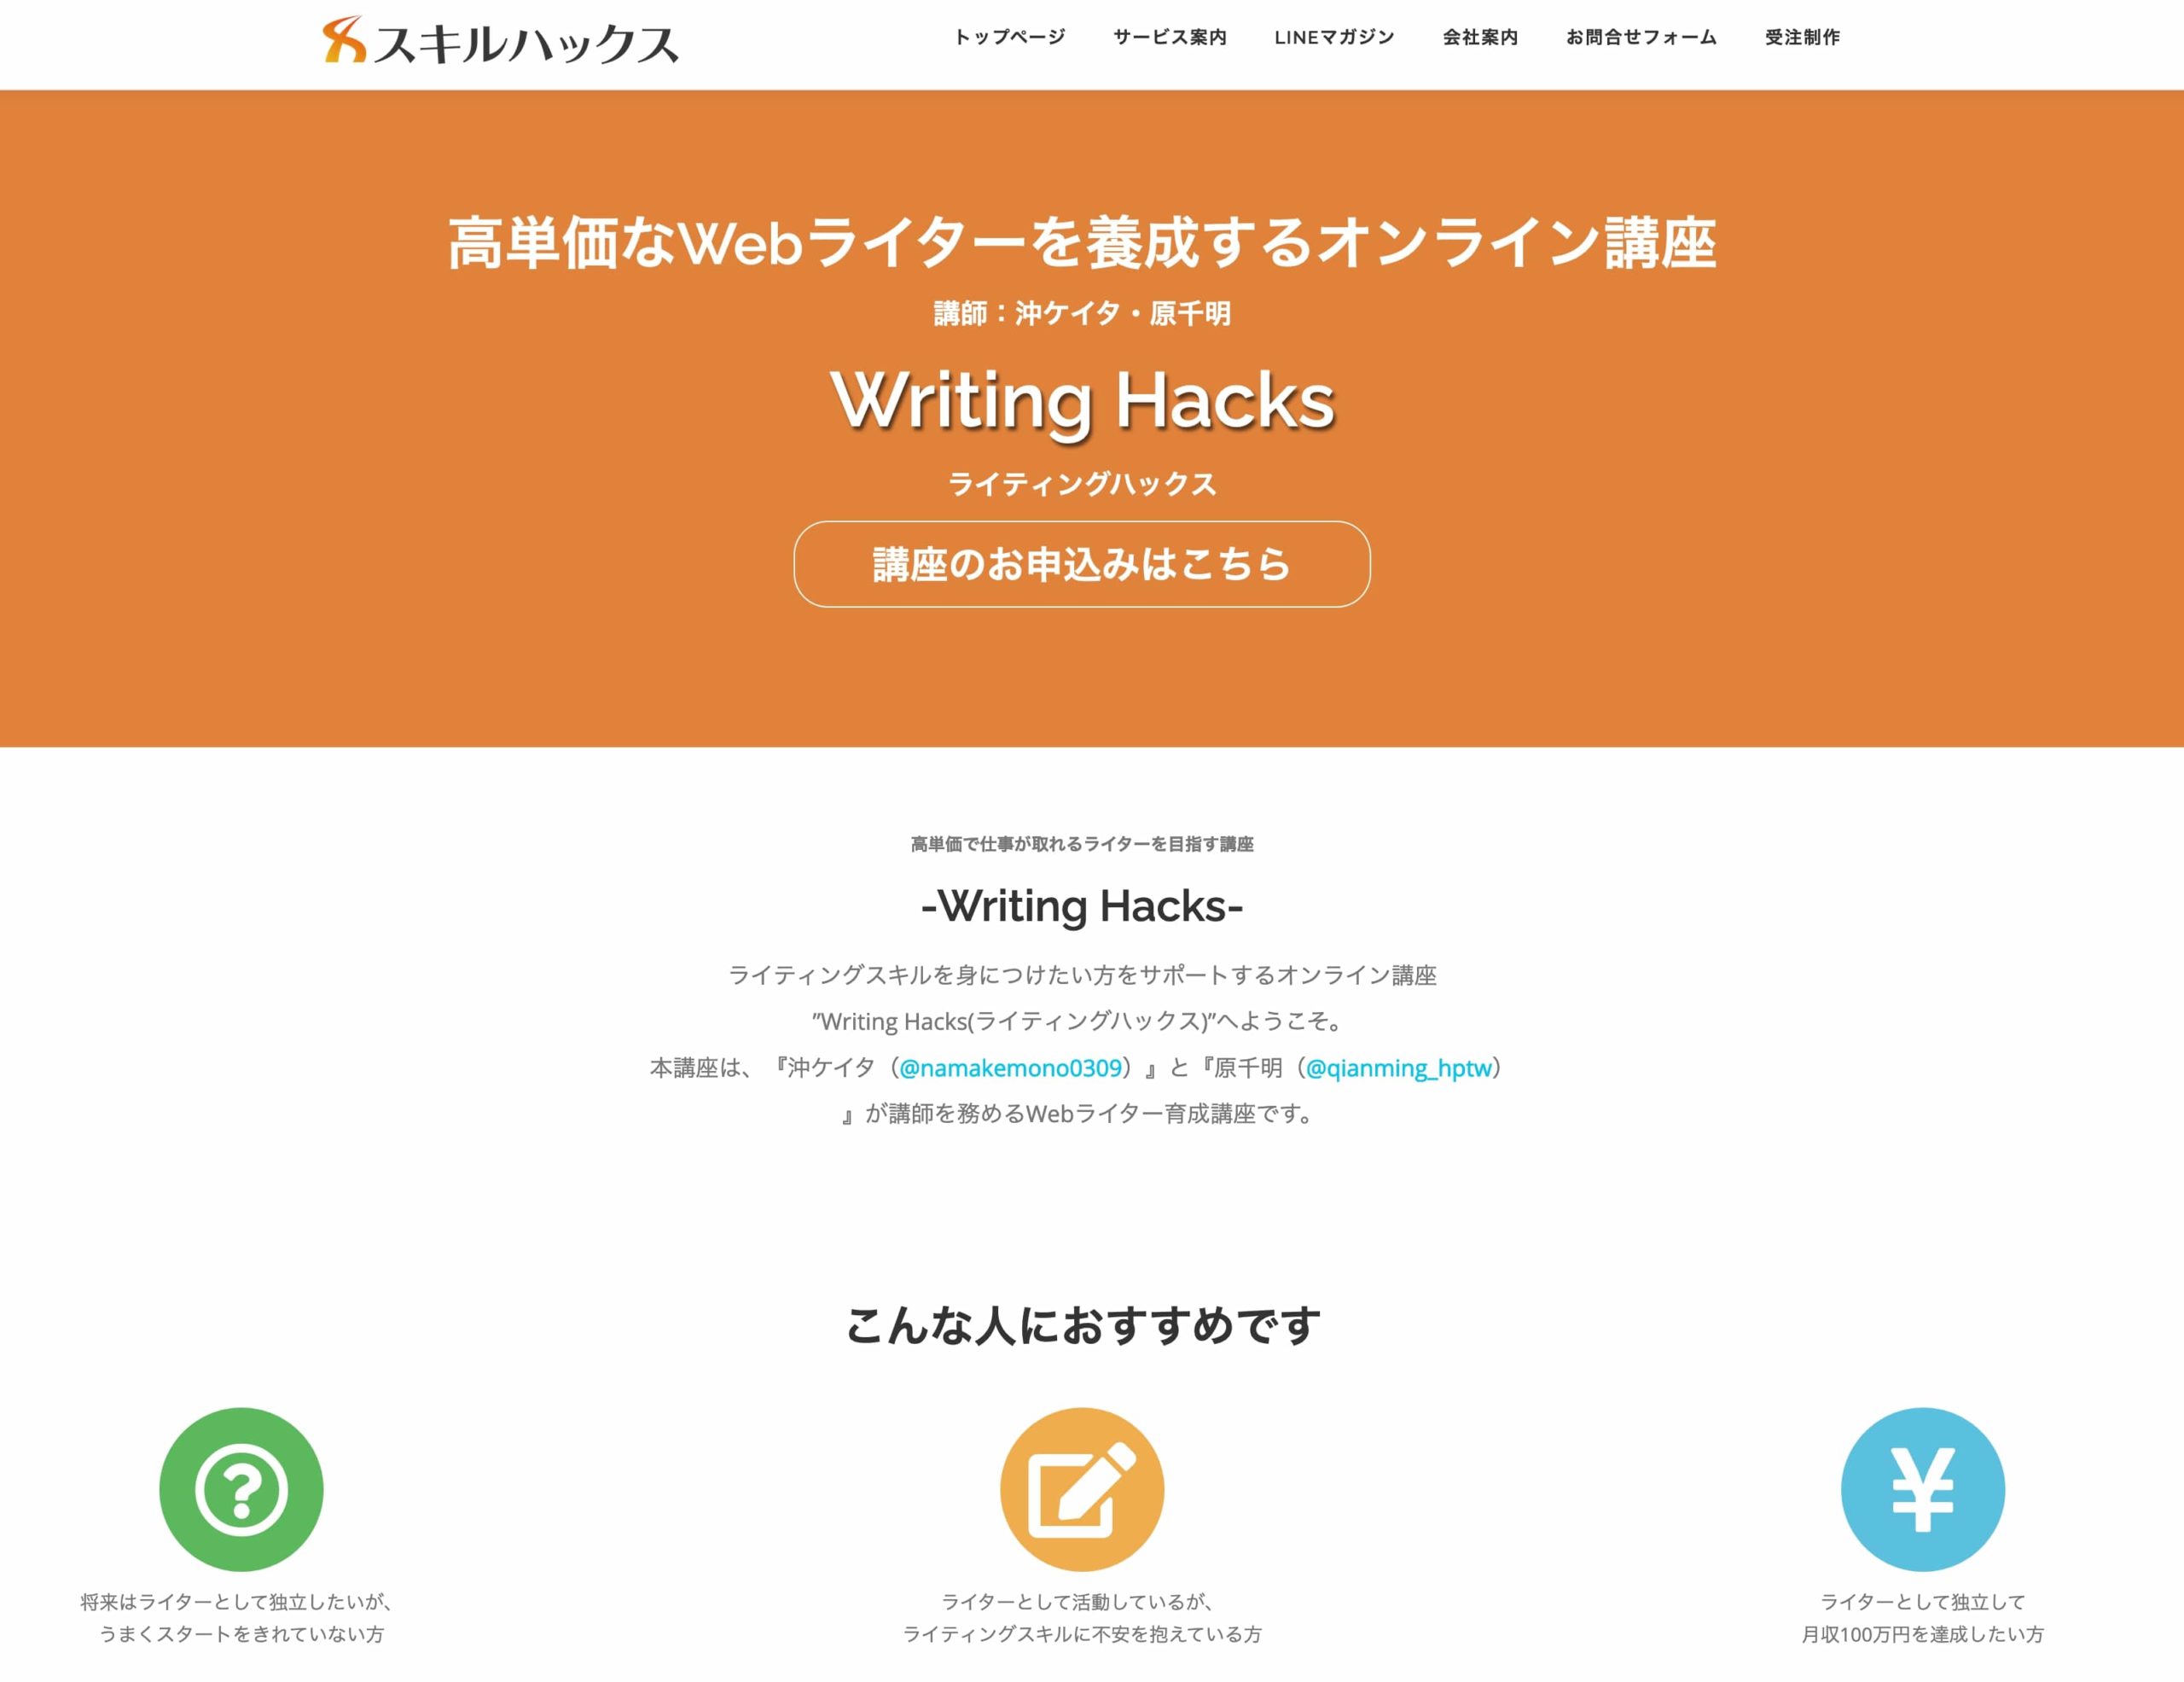 Writing Hacksページ